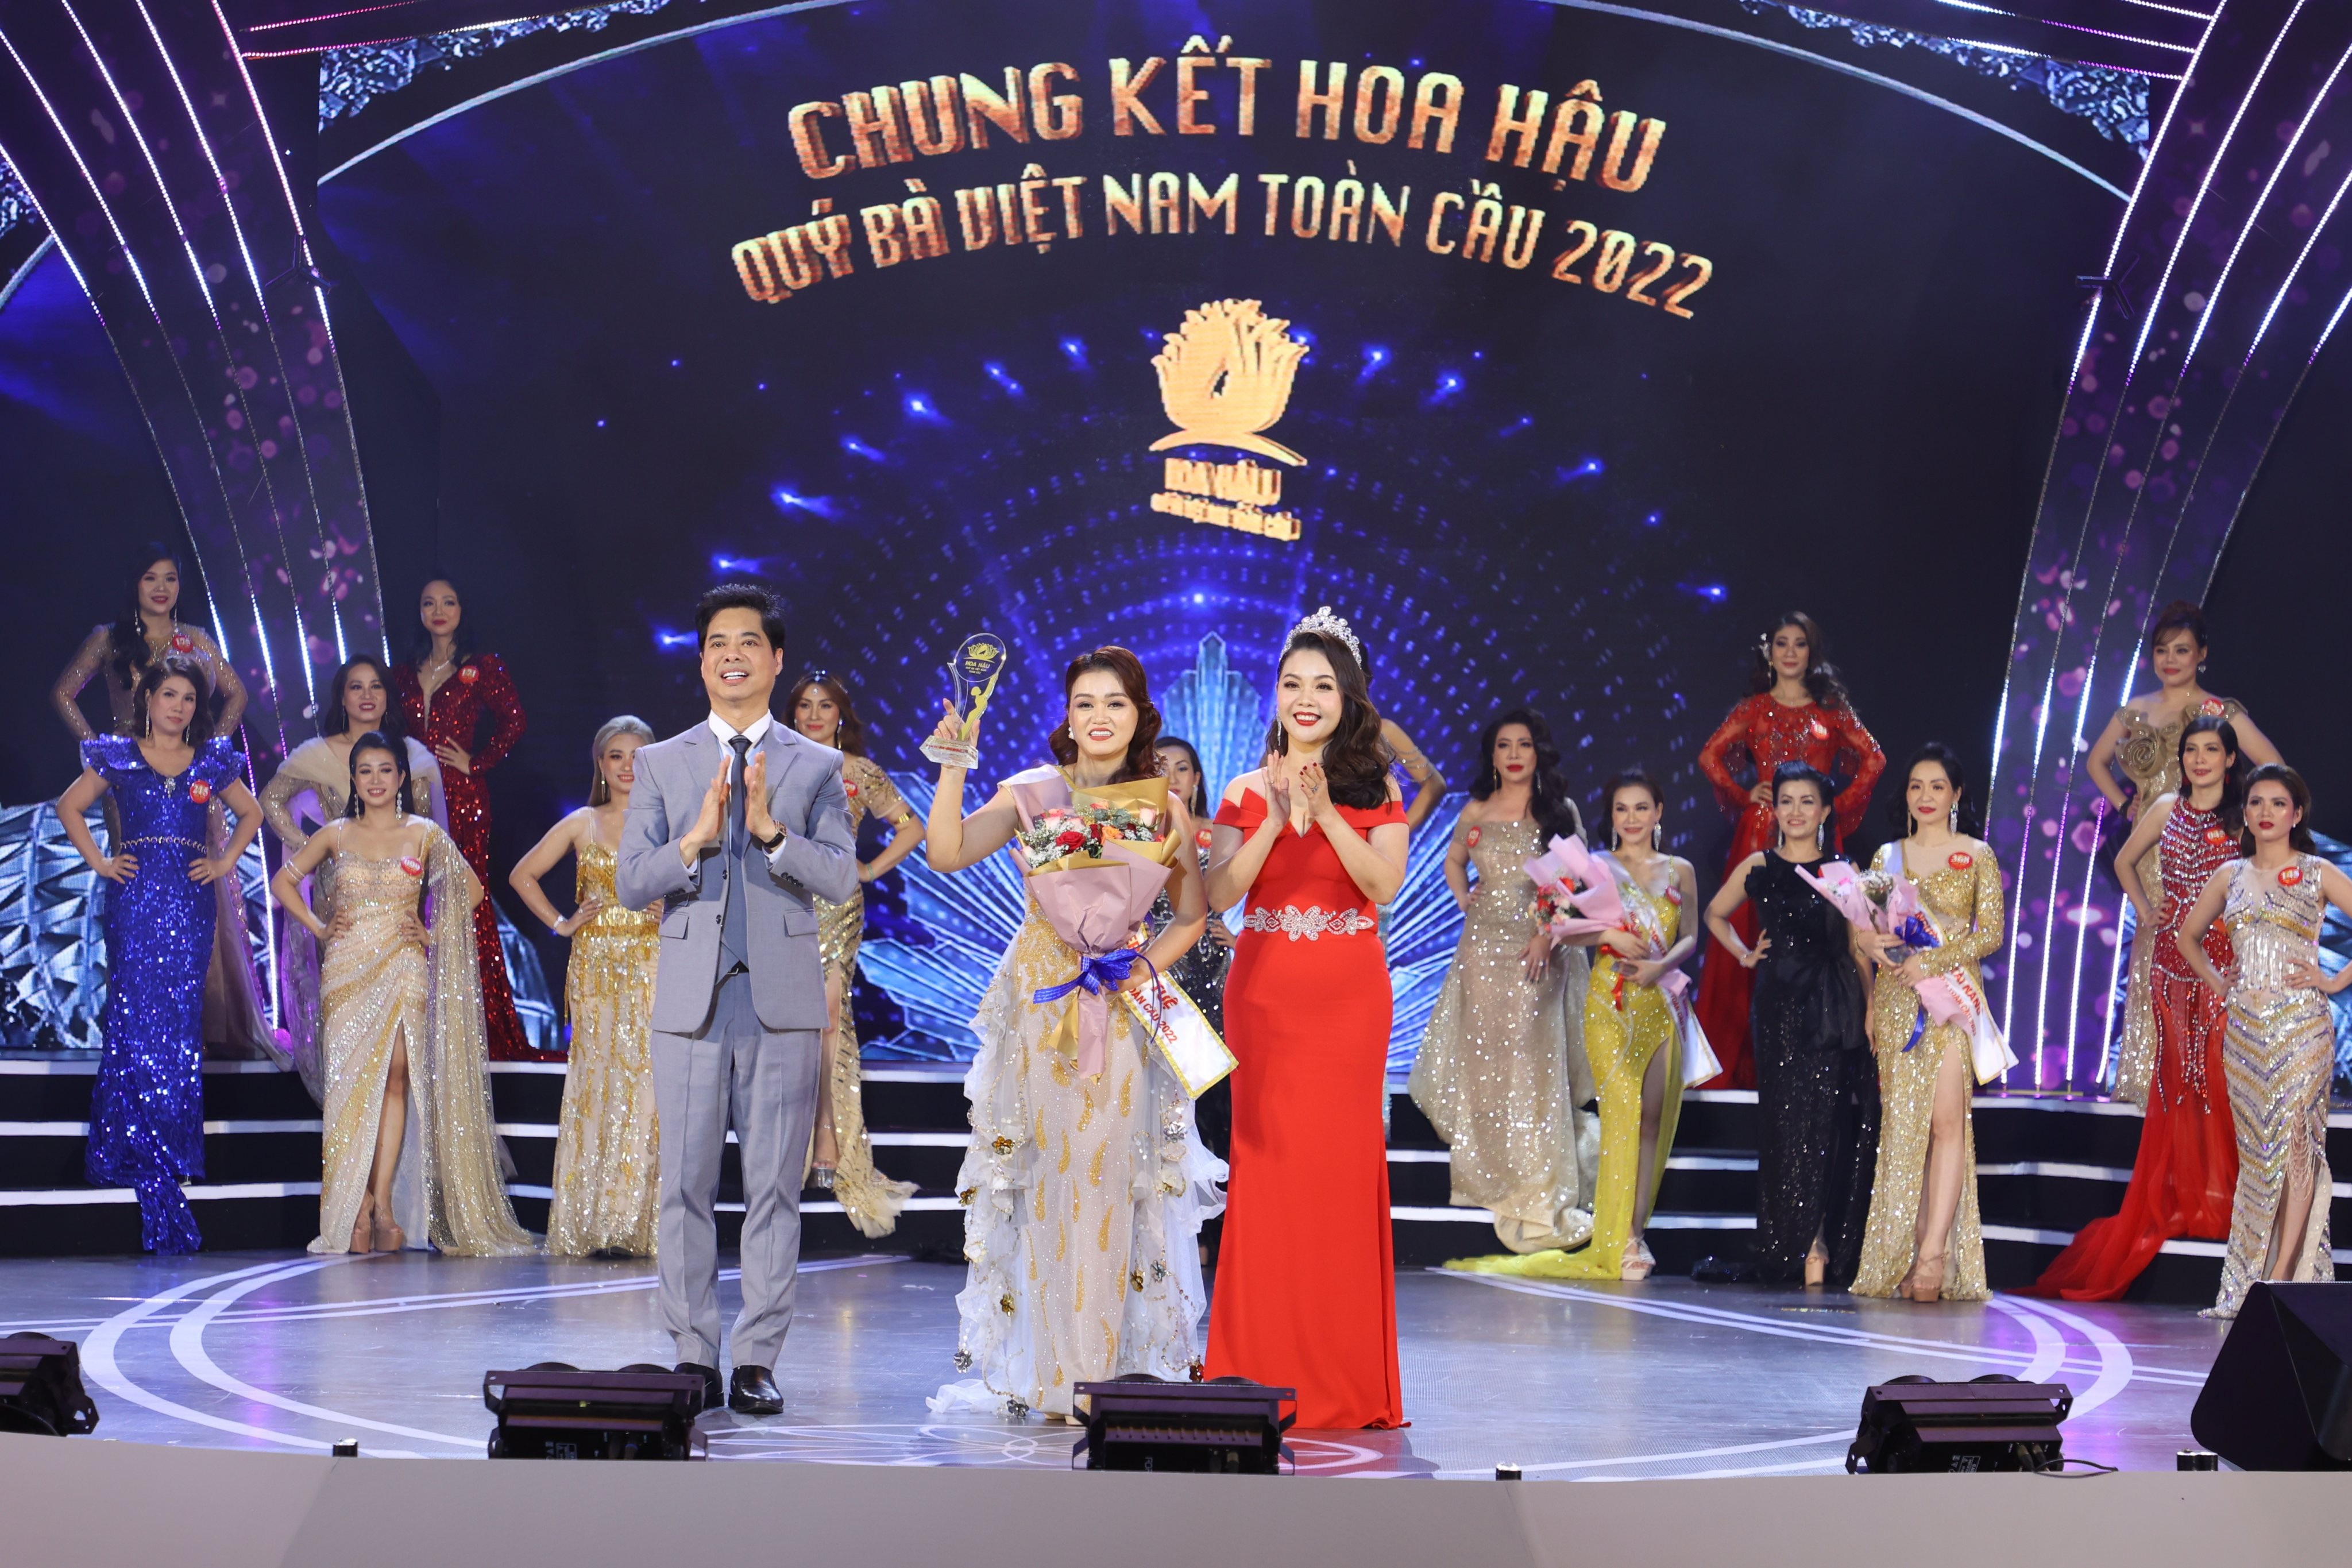 Lê Thị Bích Luyện đạt giải 'Người đẹp trí tuệ' cuộc thi Hoa hậu Quý bà Việt Nam Toàn cầu 2022